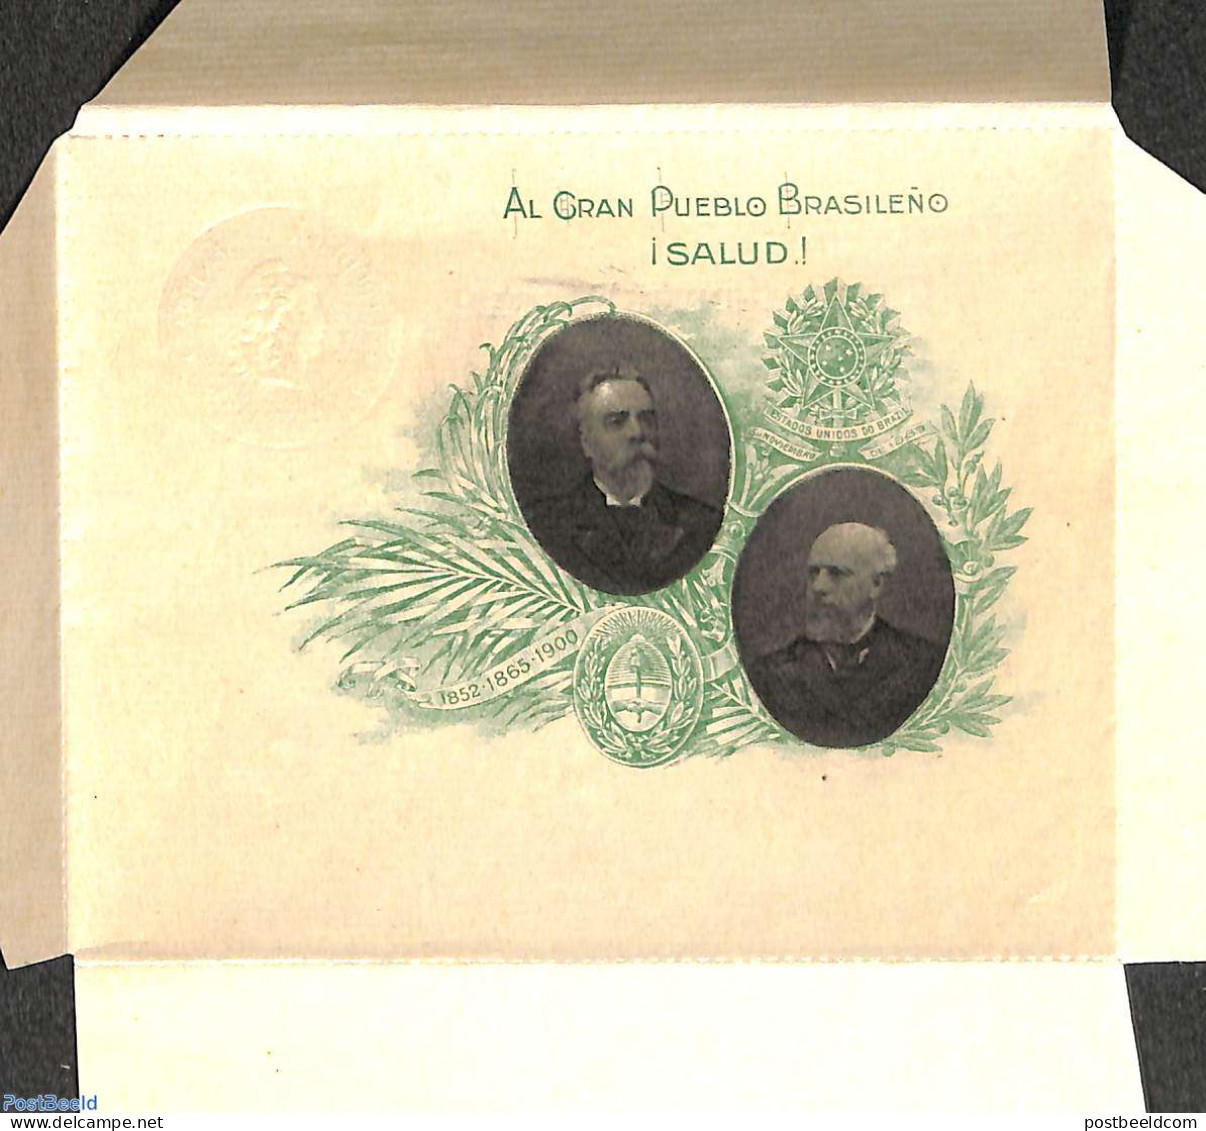 Argentina 1900 Letter Sheet 5c Memorandum Postal, Unused Postal Stationary, Stamps On Stamps - Briefe U. Dokumente